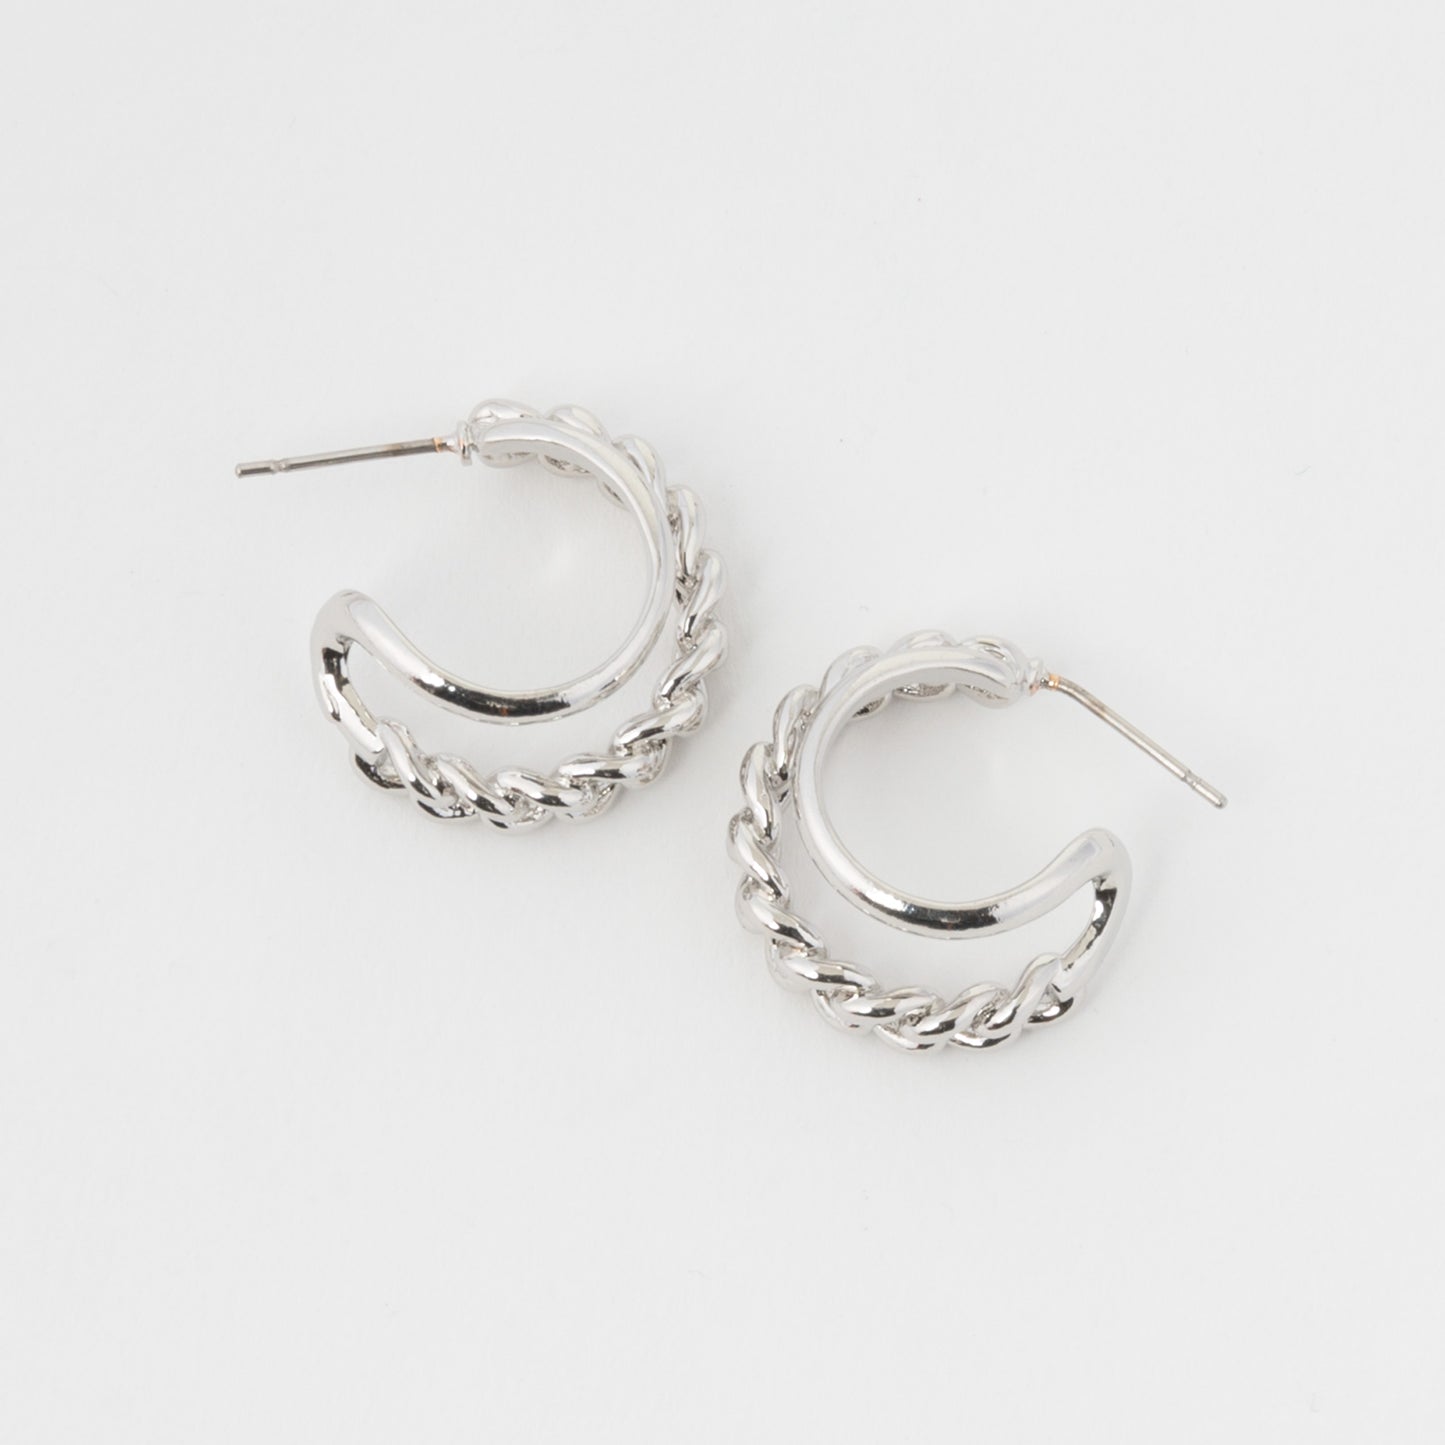 Small Double Chain Hoop Earrings